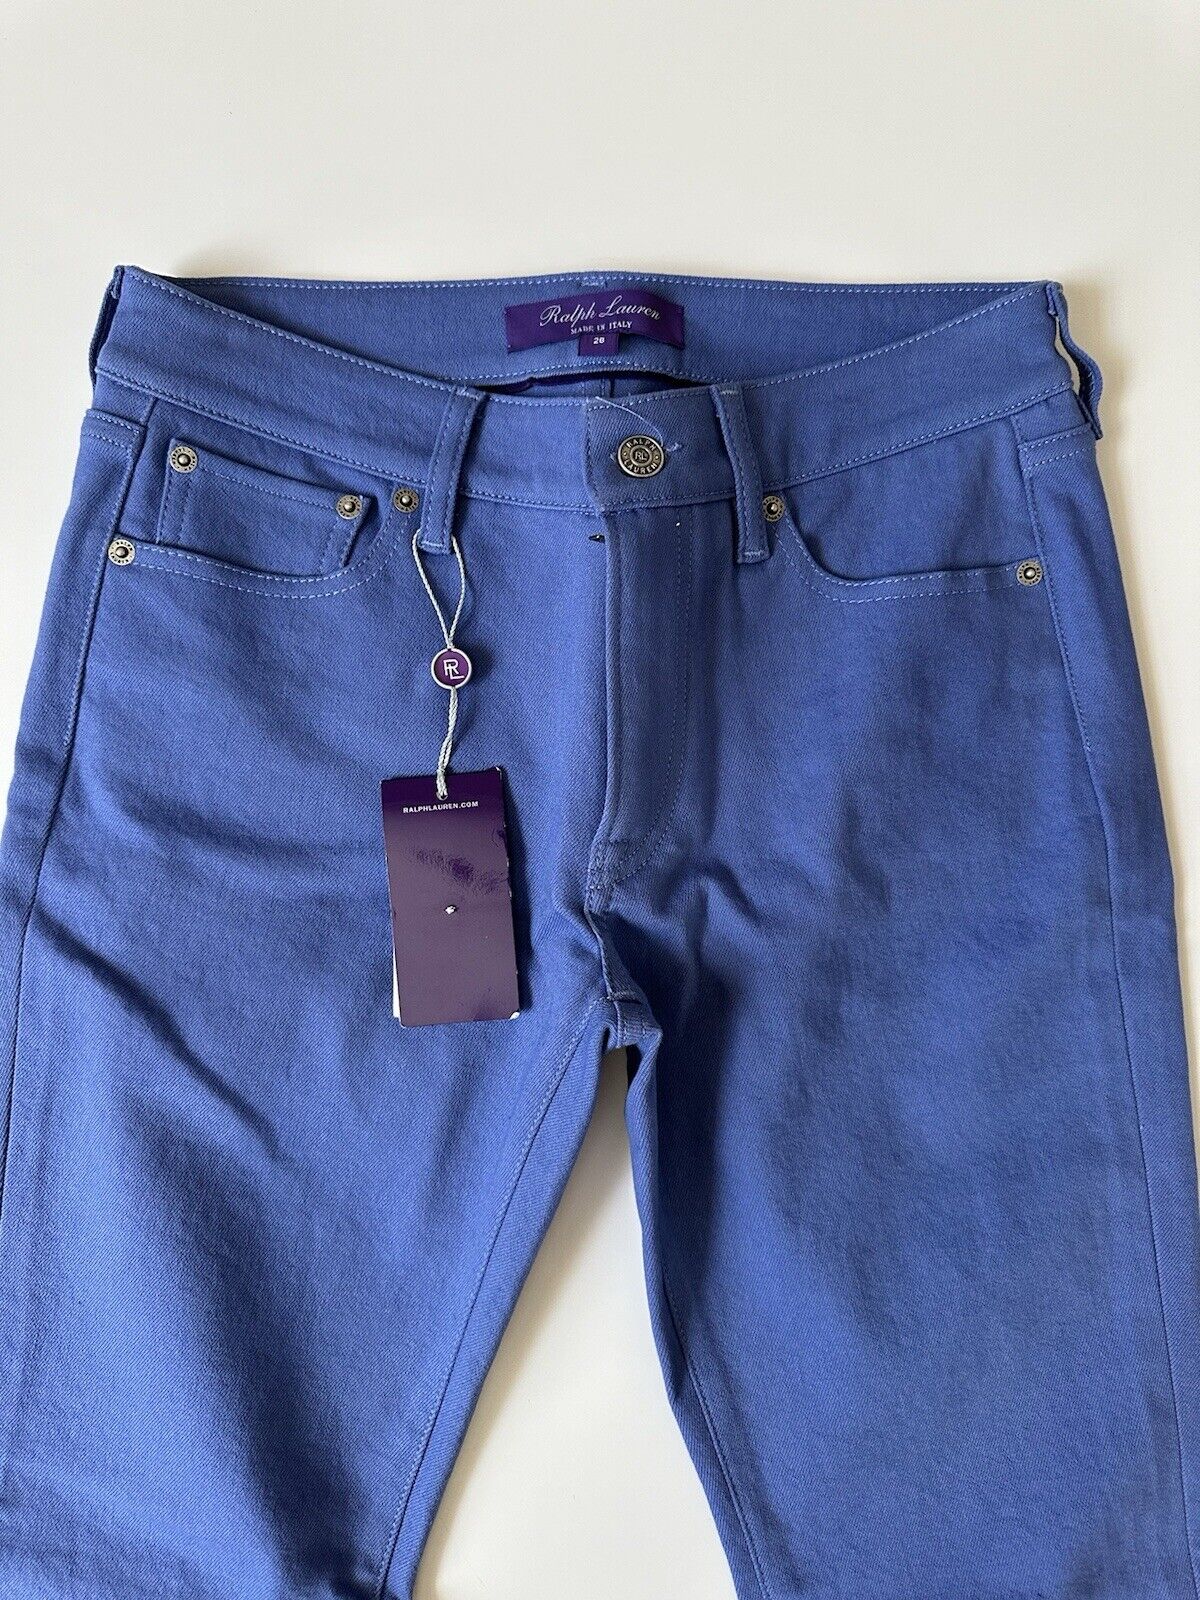 Ralph Lauren Purple Label Women’s Blue Cotton Jeans 26 Italy NWT $590